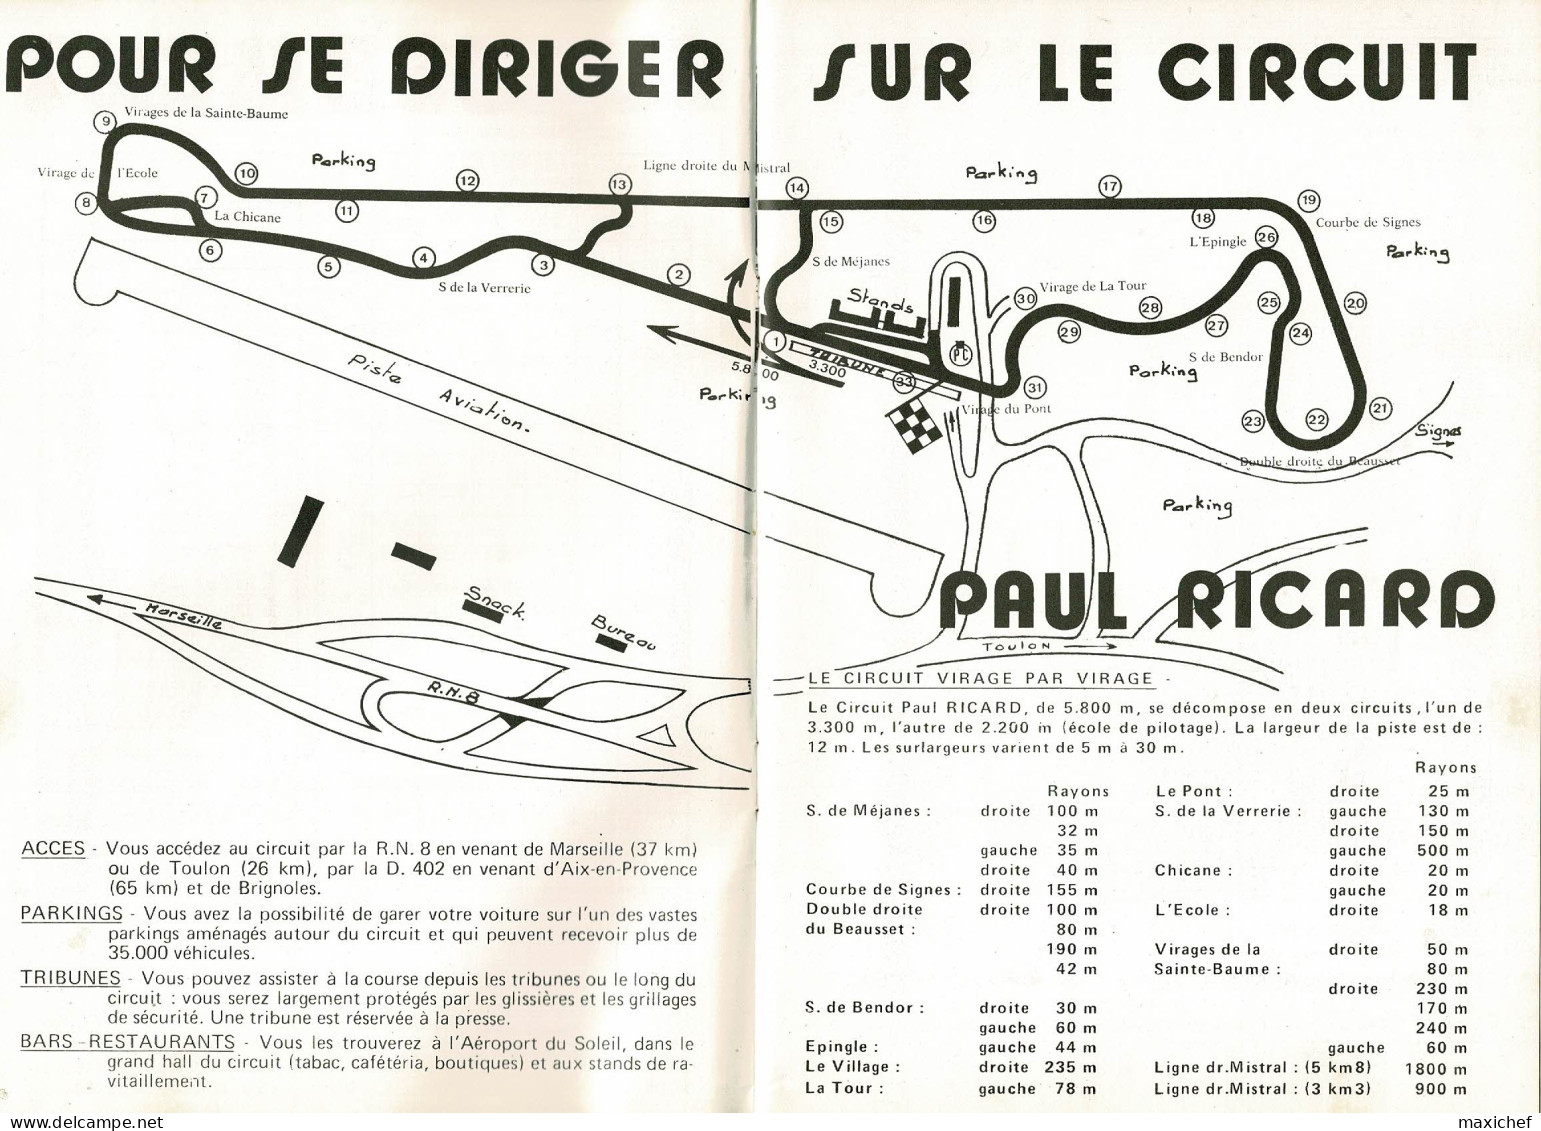 Circuit Paul Ricard 2.3.4 Juillet 1971 - Championnat Du Monde Formule 1, 4ème Grand Prix De France - 15 X 22cm - Autorennen - F1